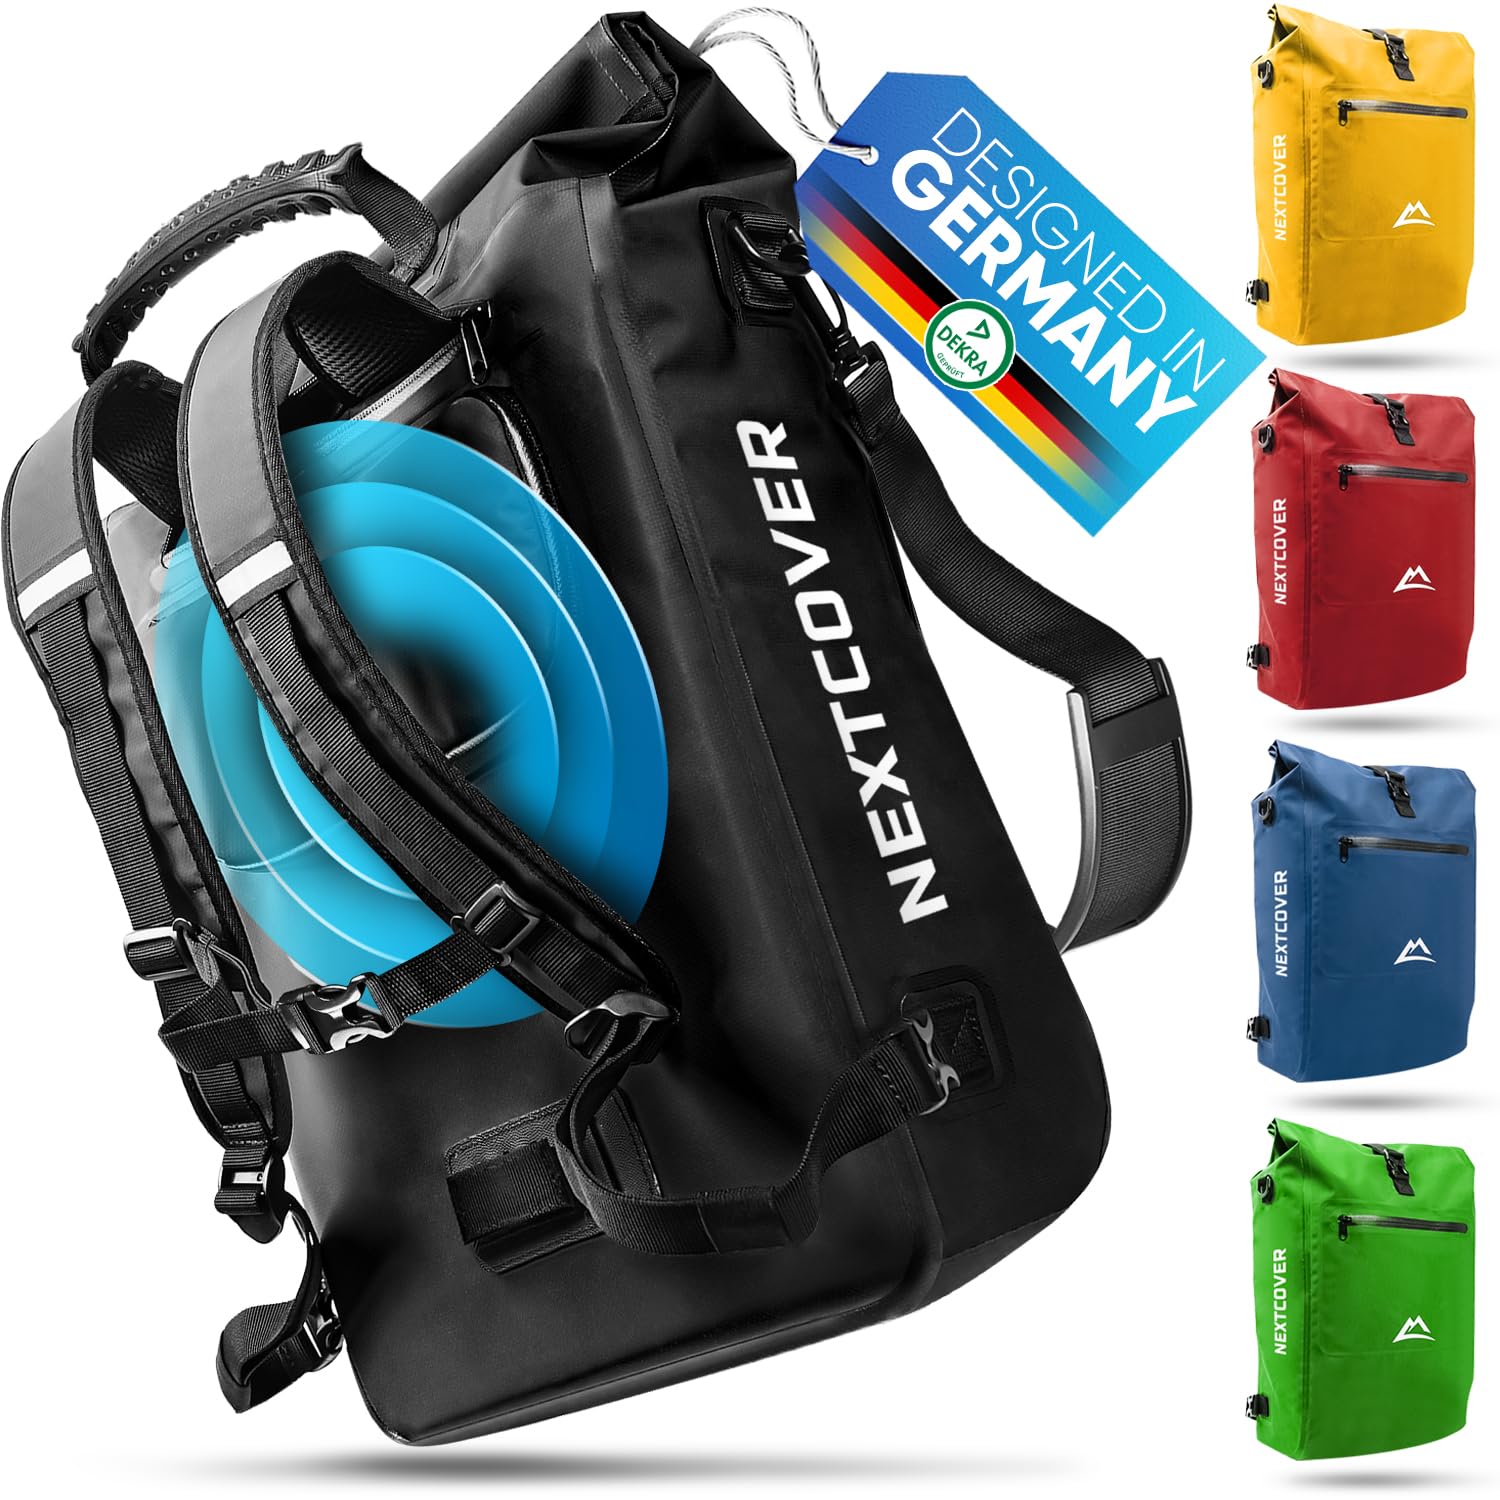 Nextcover® NEU 3in1 Fahrradtasche für Gepäckträger [Aquashield] - Gepäckträgertasche, Rucksack und Umhängetasche [25 Liter] I Fahrrad Tasche wasserdicht von Nextcover